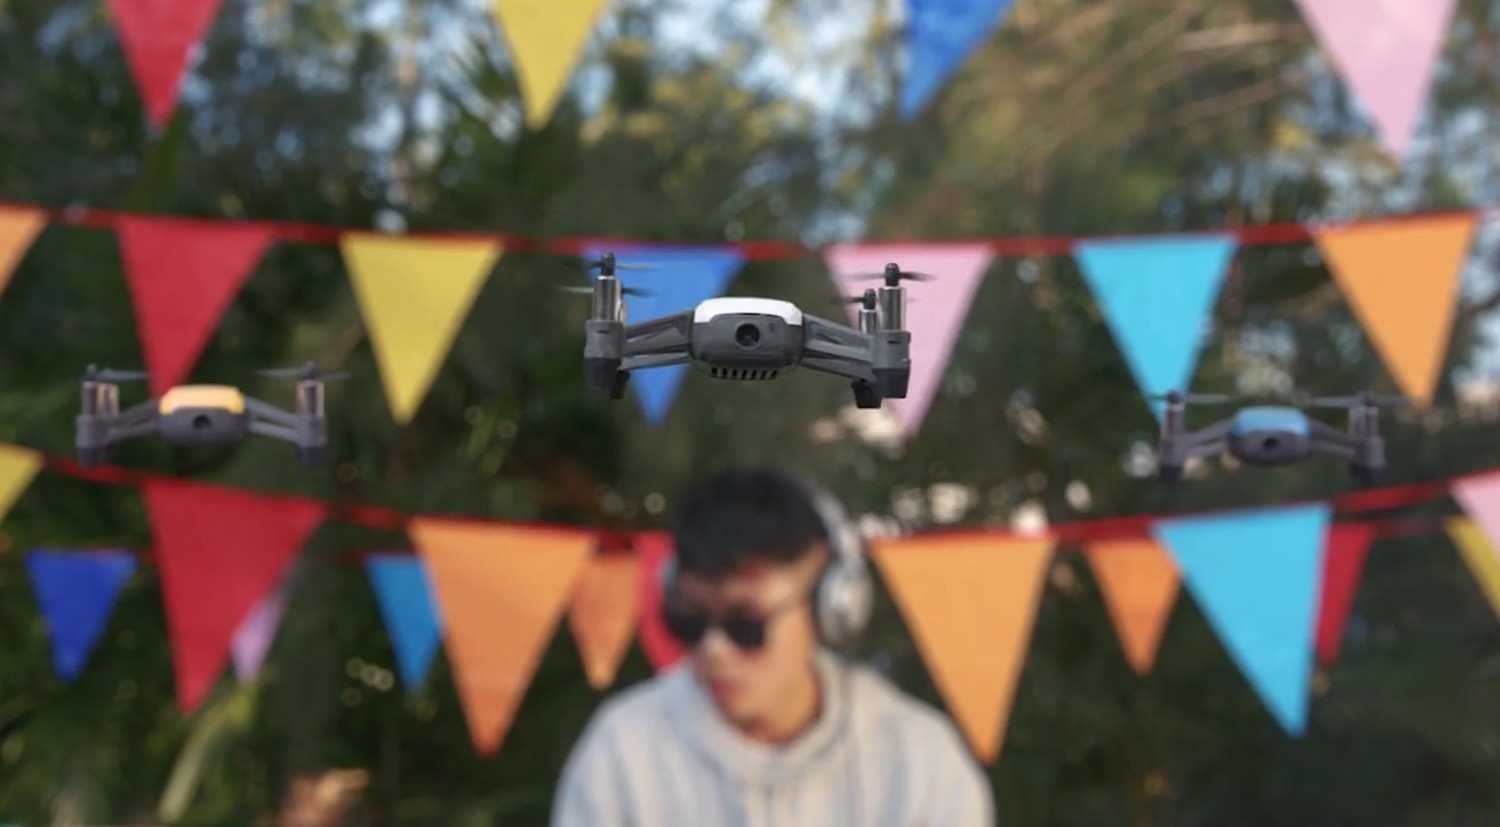 Představení drona Tello